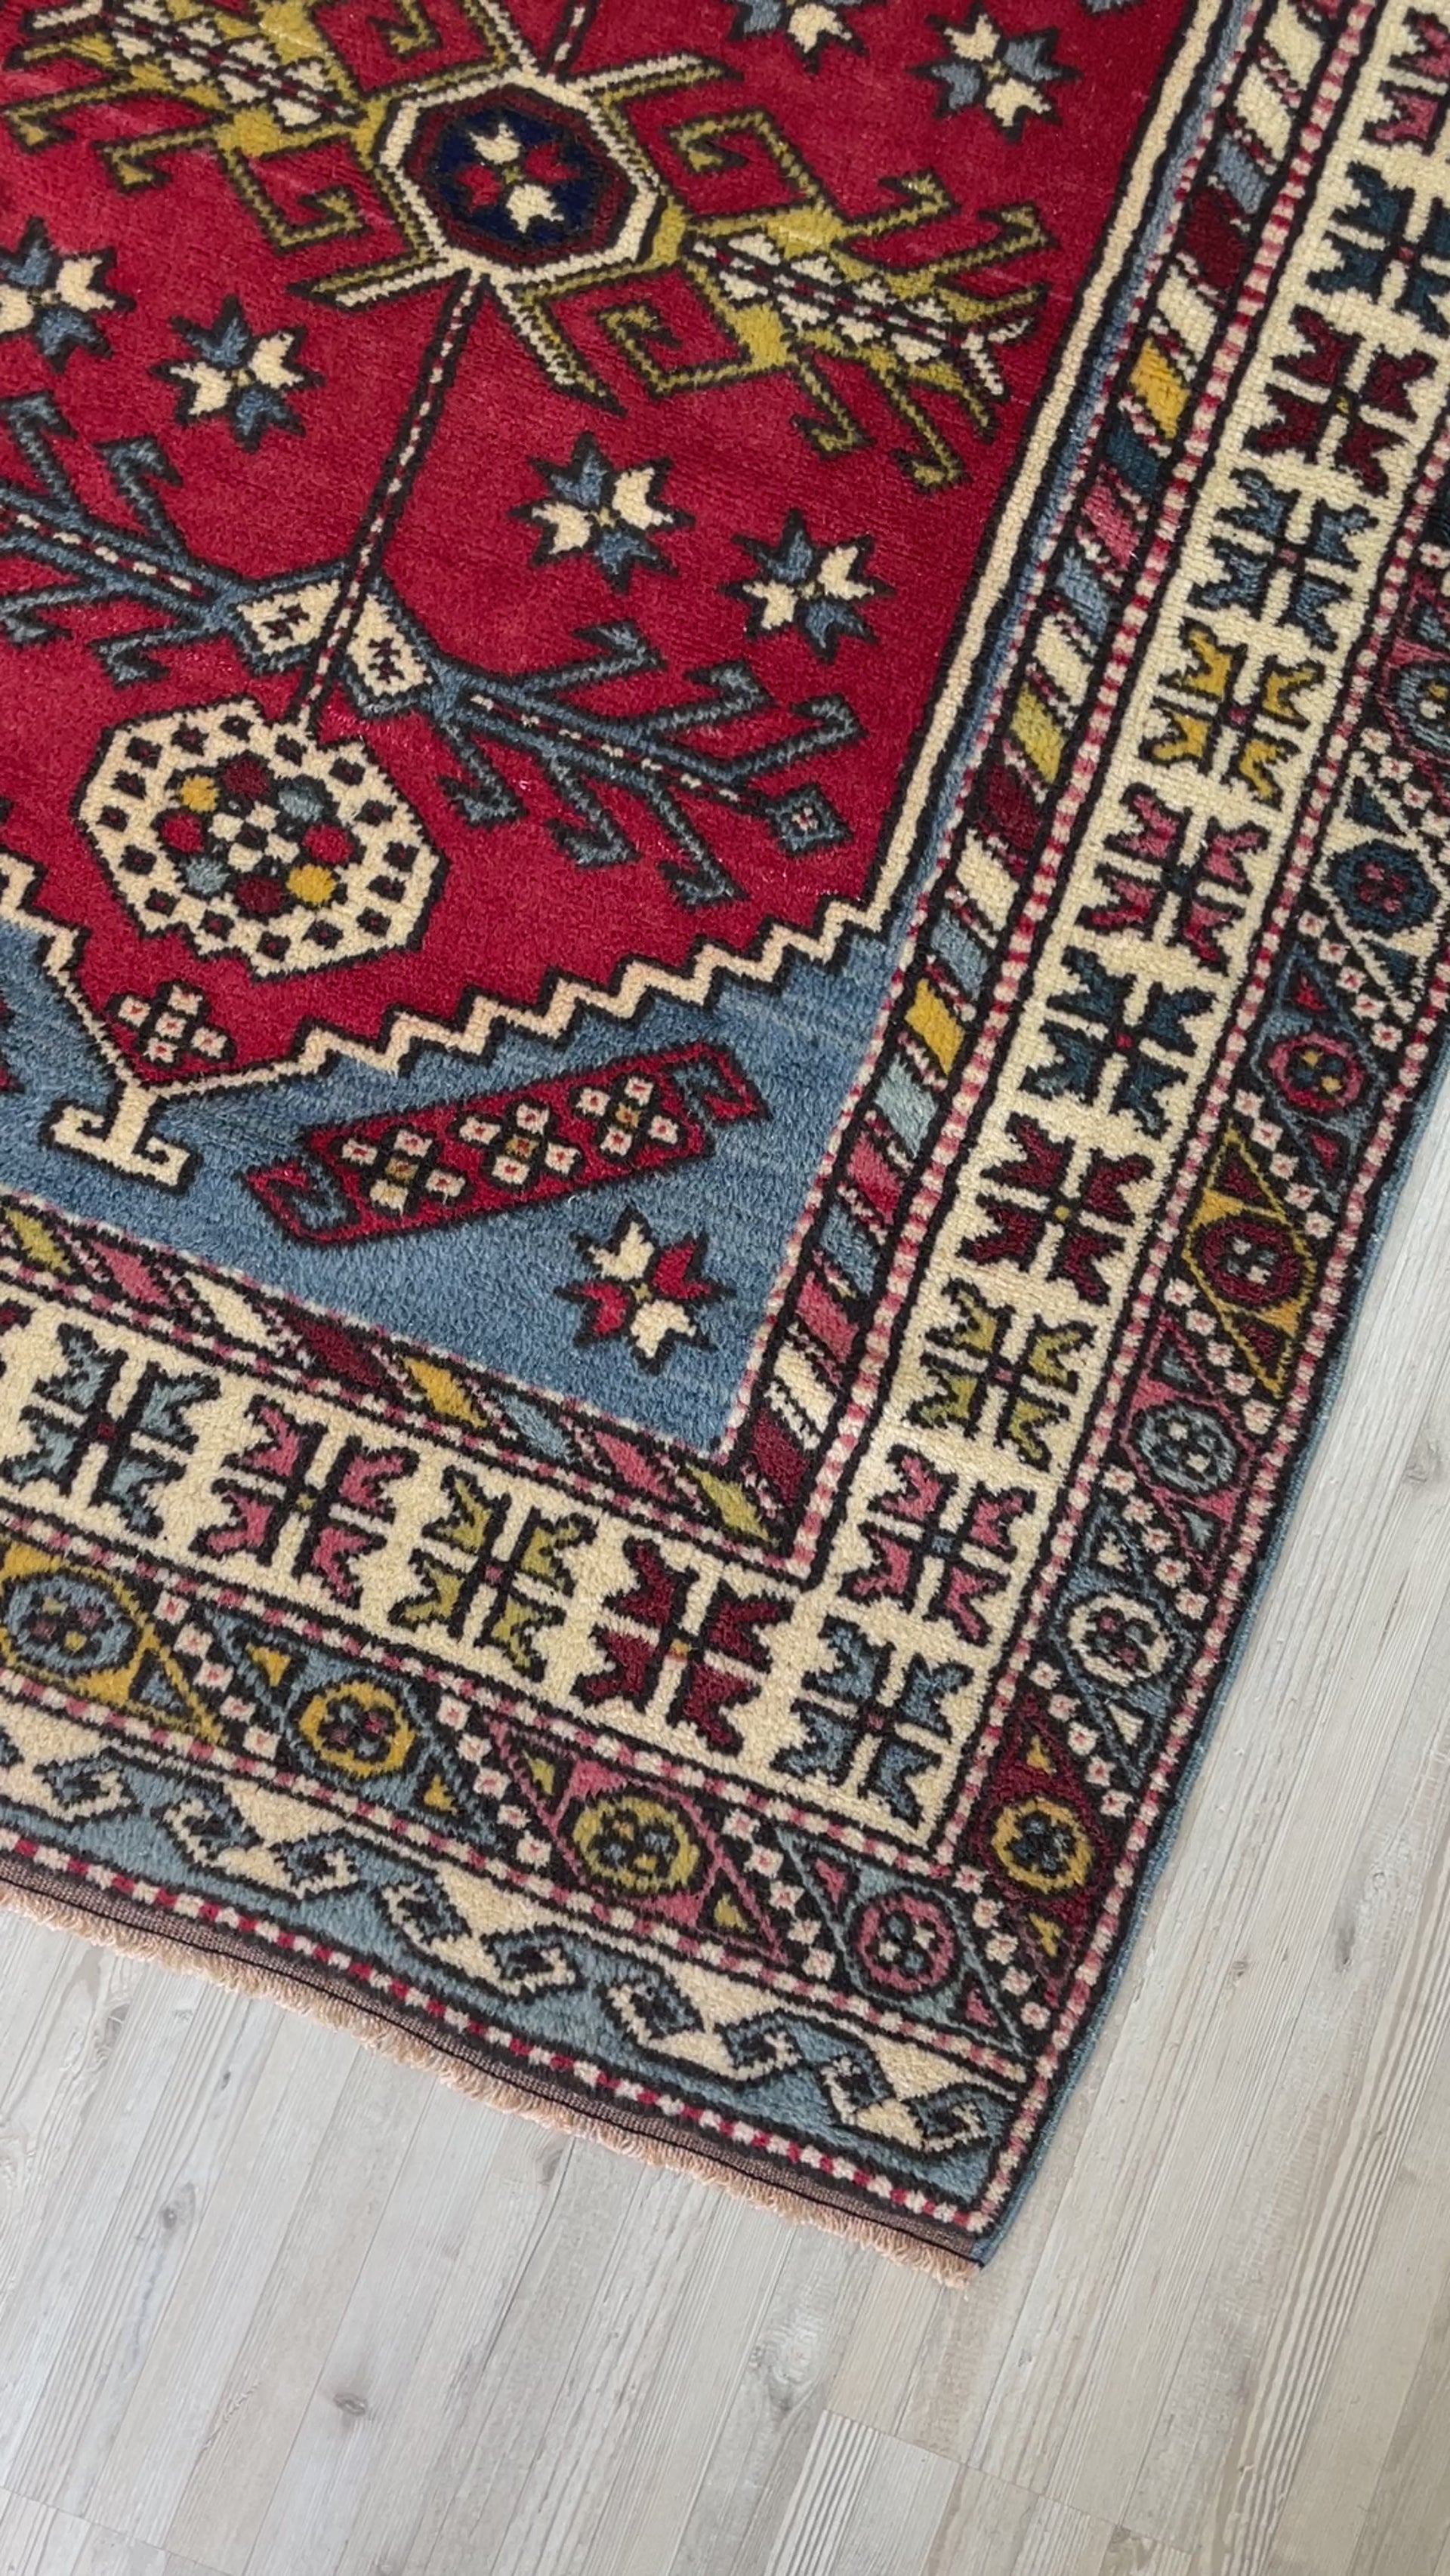 Yuntdag vintage turkish rug shop san francisco bay area rug shopping berkeley palo alto buy rugs online california ontario canada